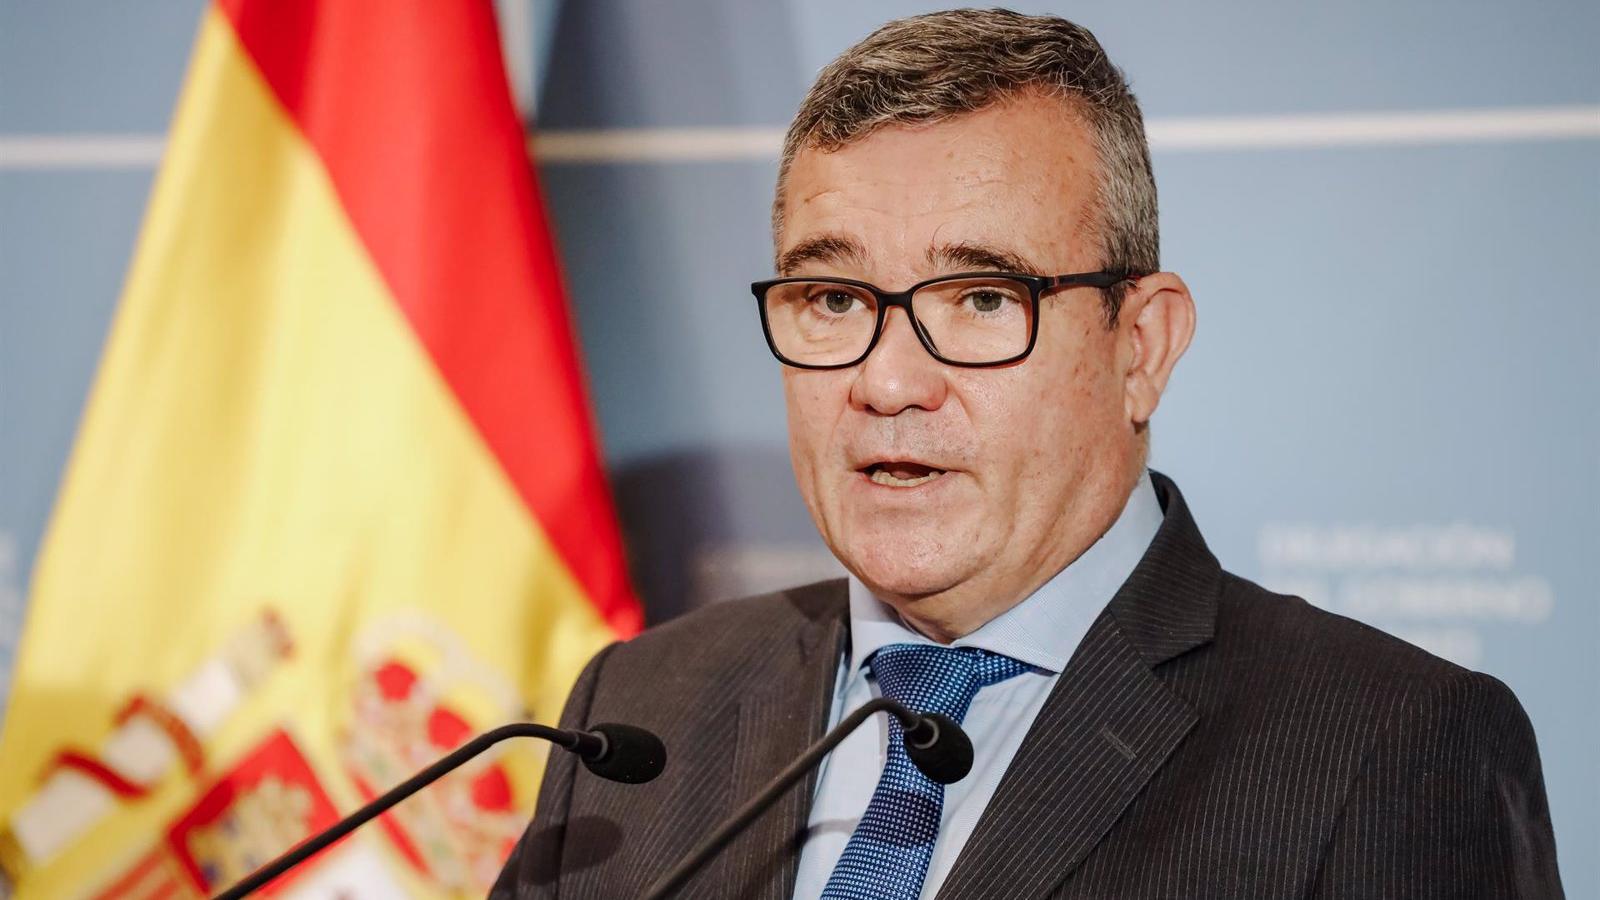 Hita espera renovar su candidatura en Arganda, confía en buenos resultados del PSOE y destaca la 